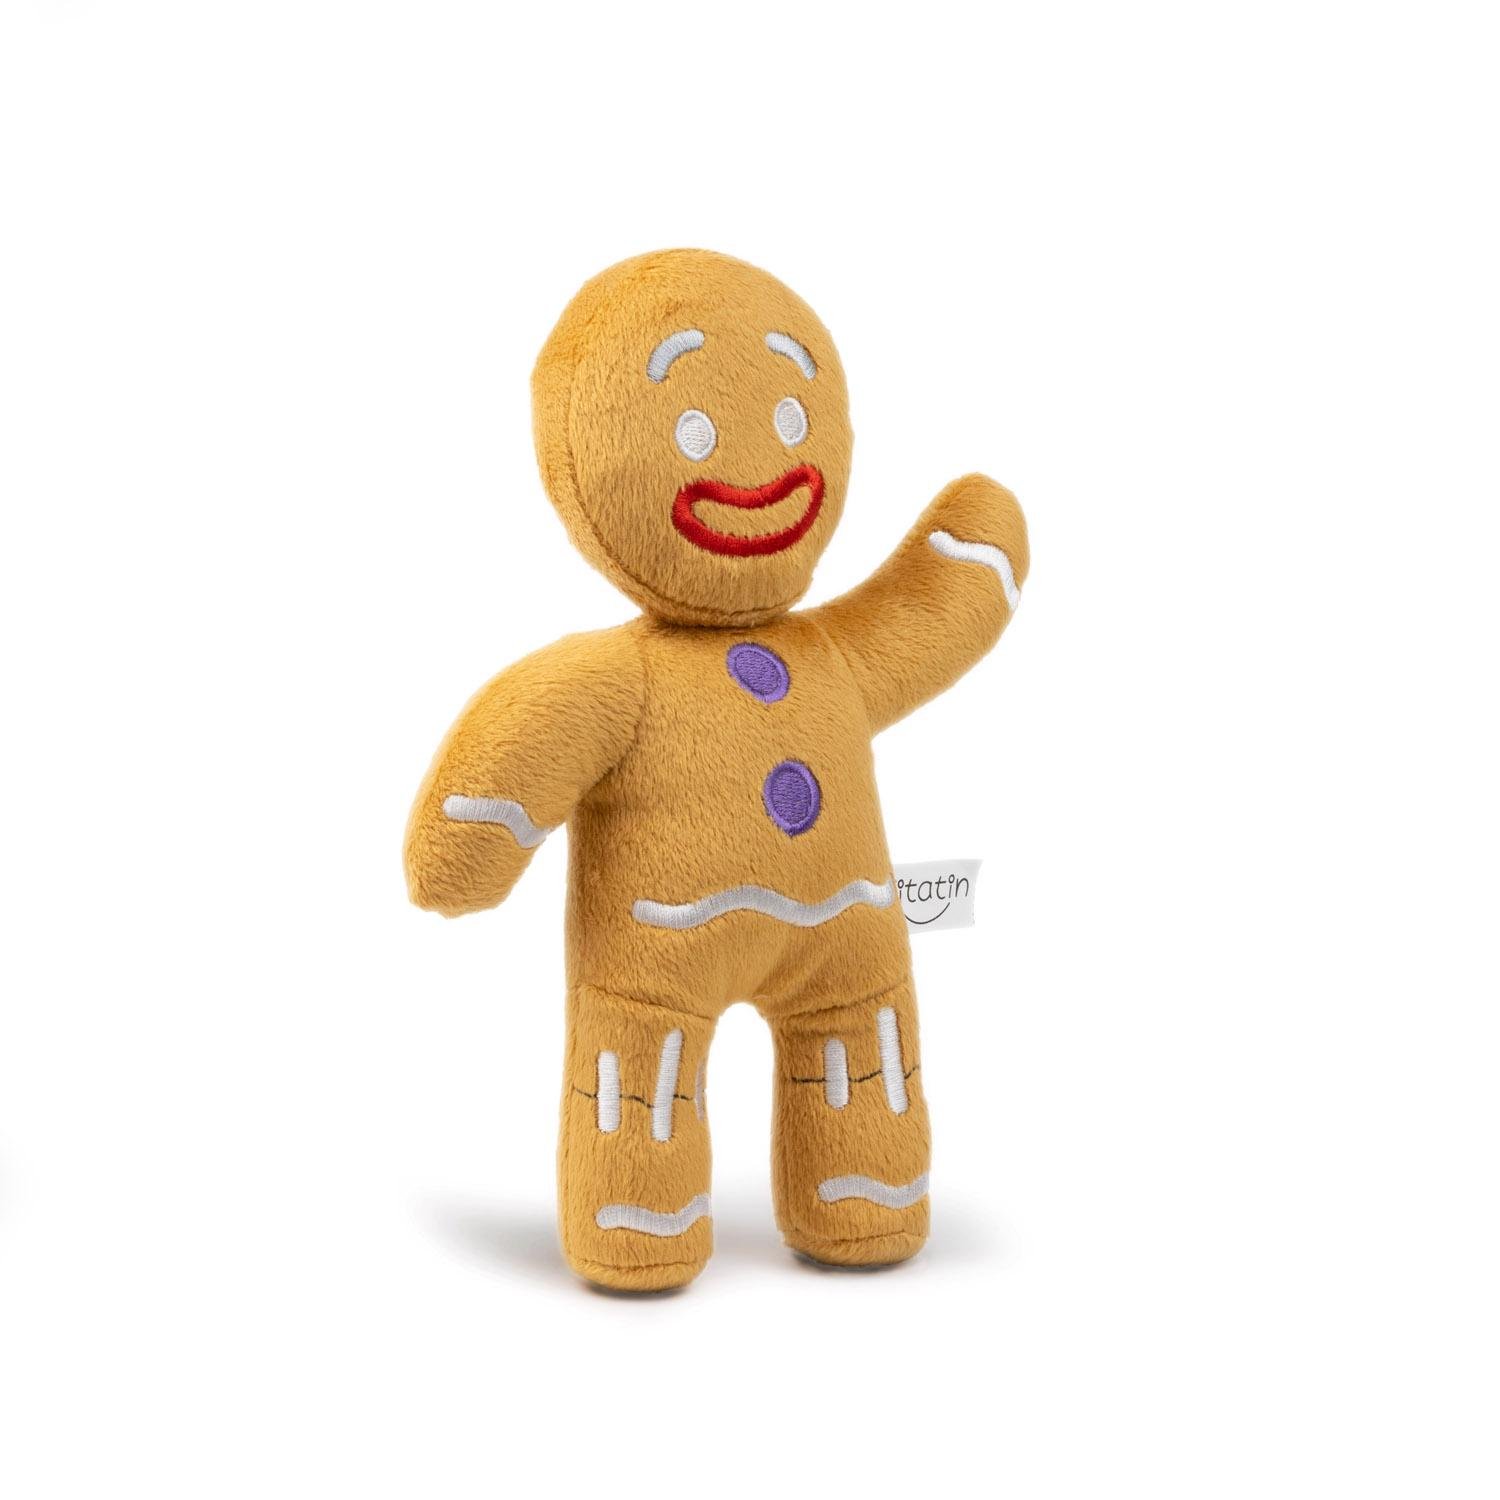 Іграшка м'яка Імбирне печиво Titatin Пряничний чоловічок